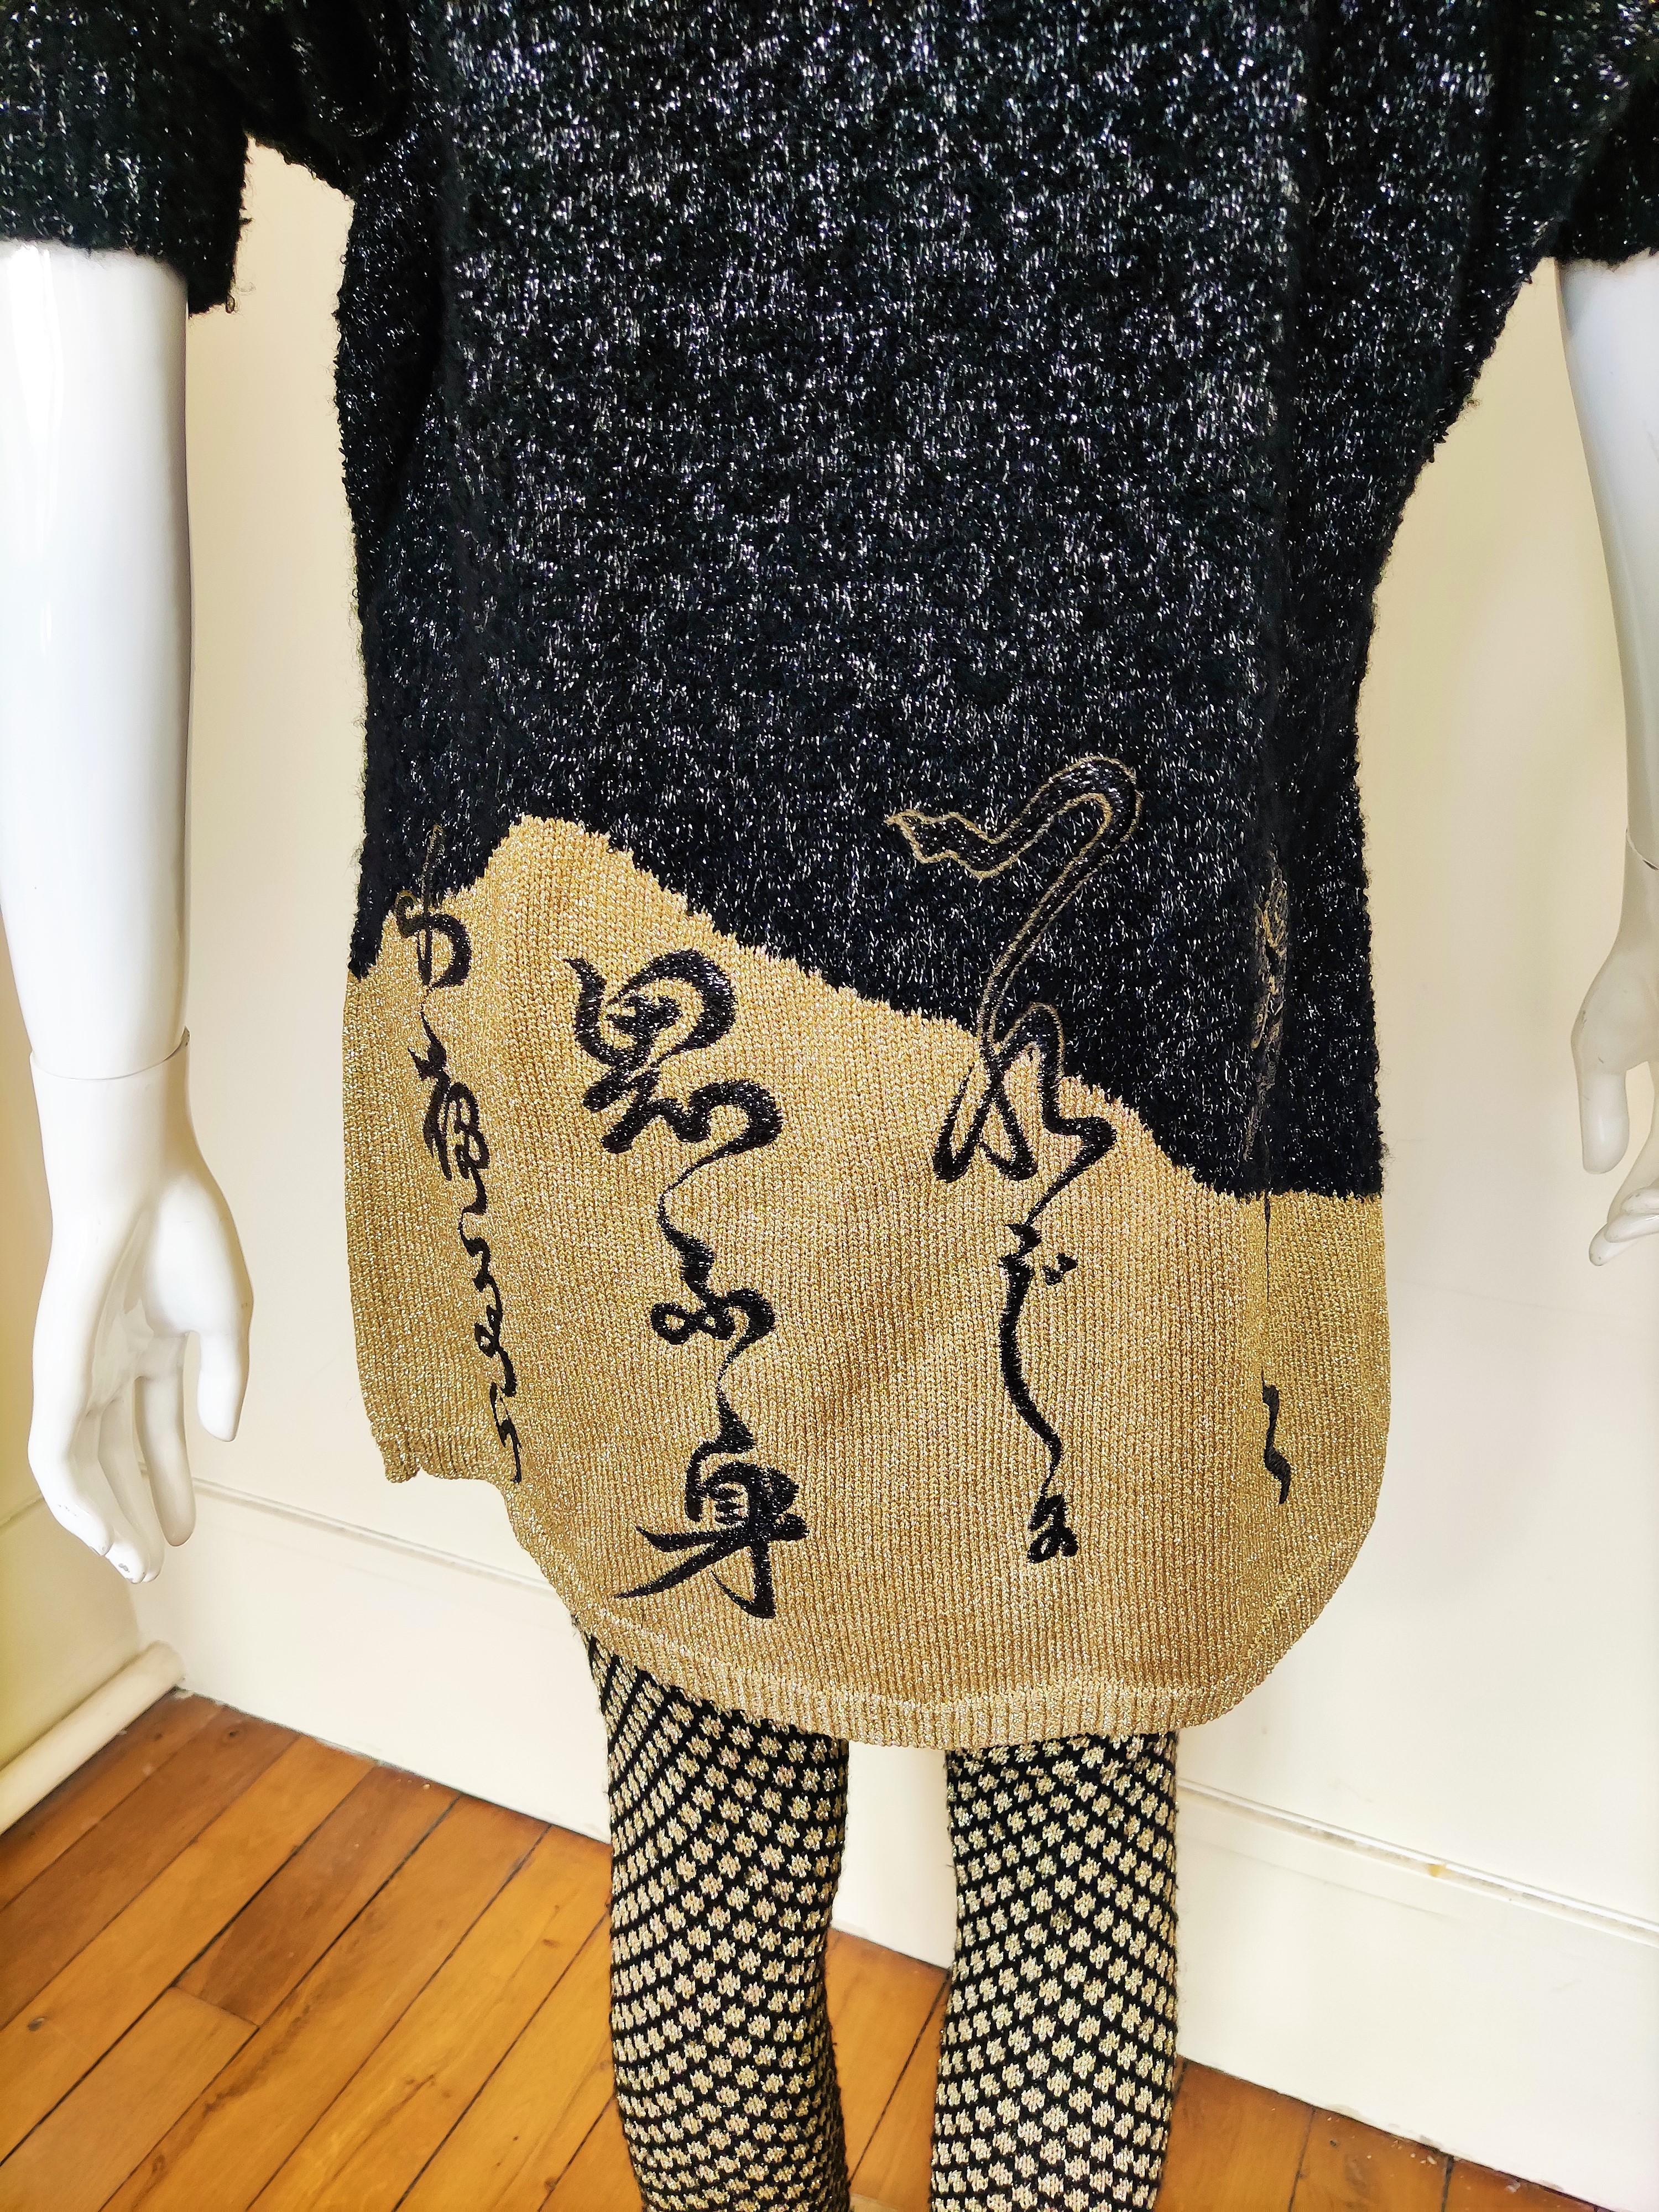 Kansai Yamamoto Japanese Bird Lurex Pigeon Metalic Vintage Sweater Dress Suit For Sale 8